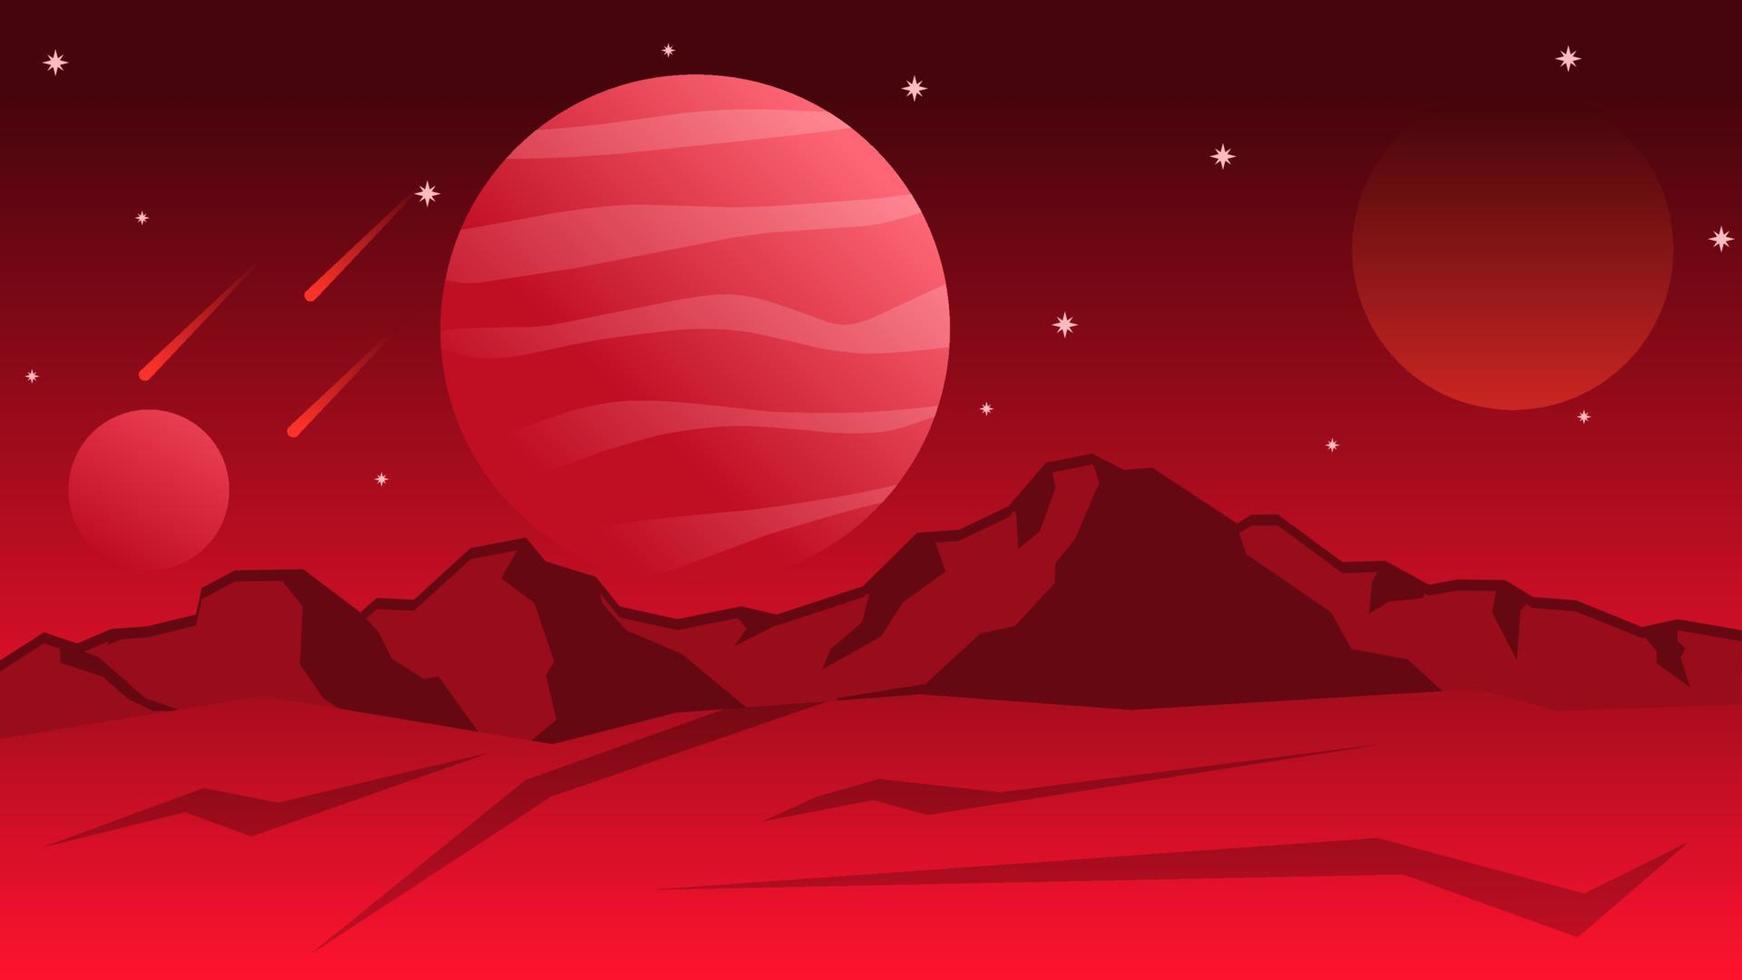 Wissenschaft Fiktion Landschaft Vektor Illustration. rot Jupiter Planet Landschaft Raum Illustration. Purpur Galaxis mit Star und Komet. Wissenschaft Fiktion von Planet zum Hintergrund, Hintergrund oder Illustration